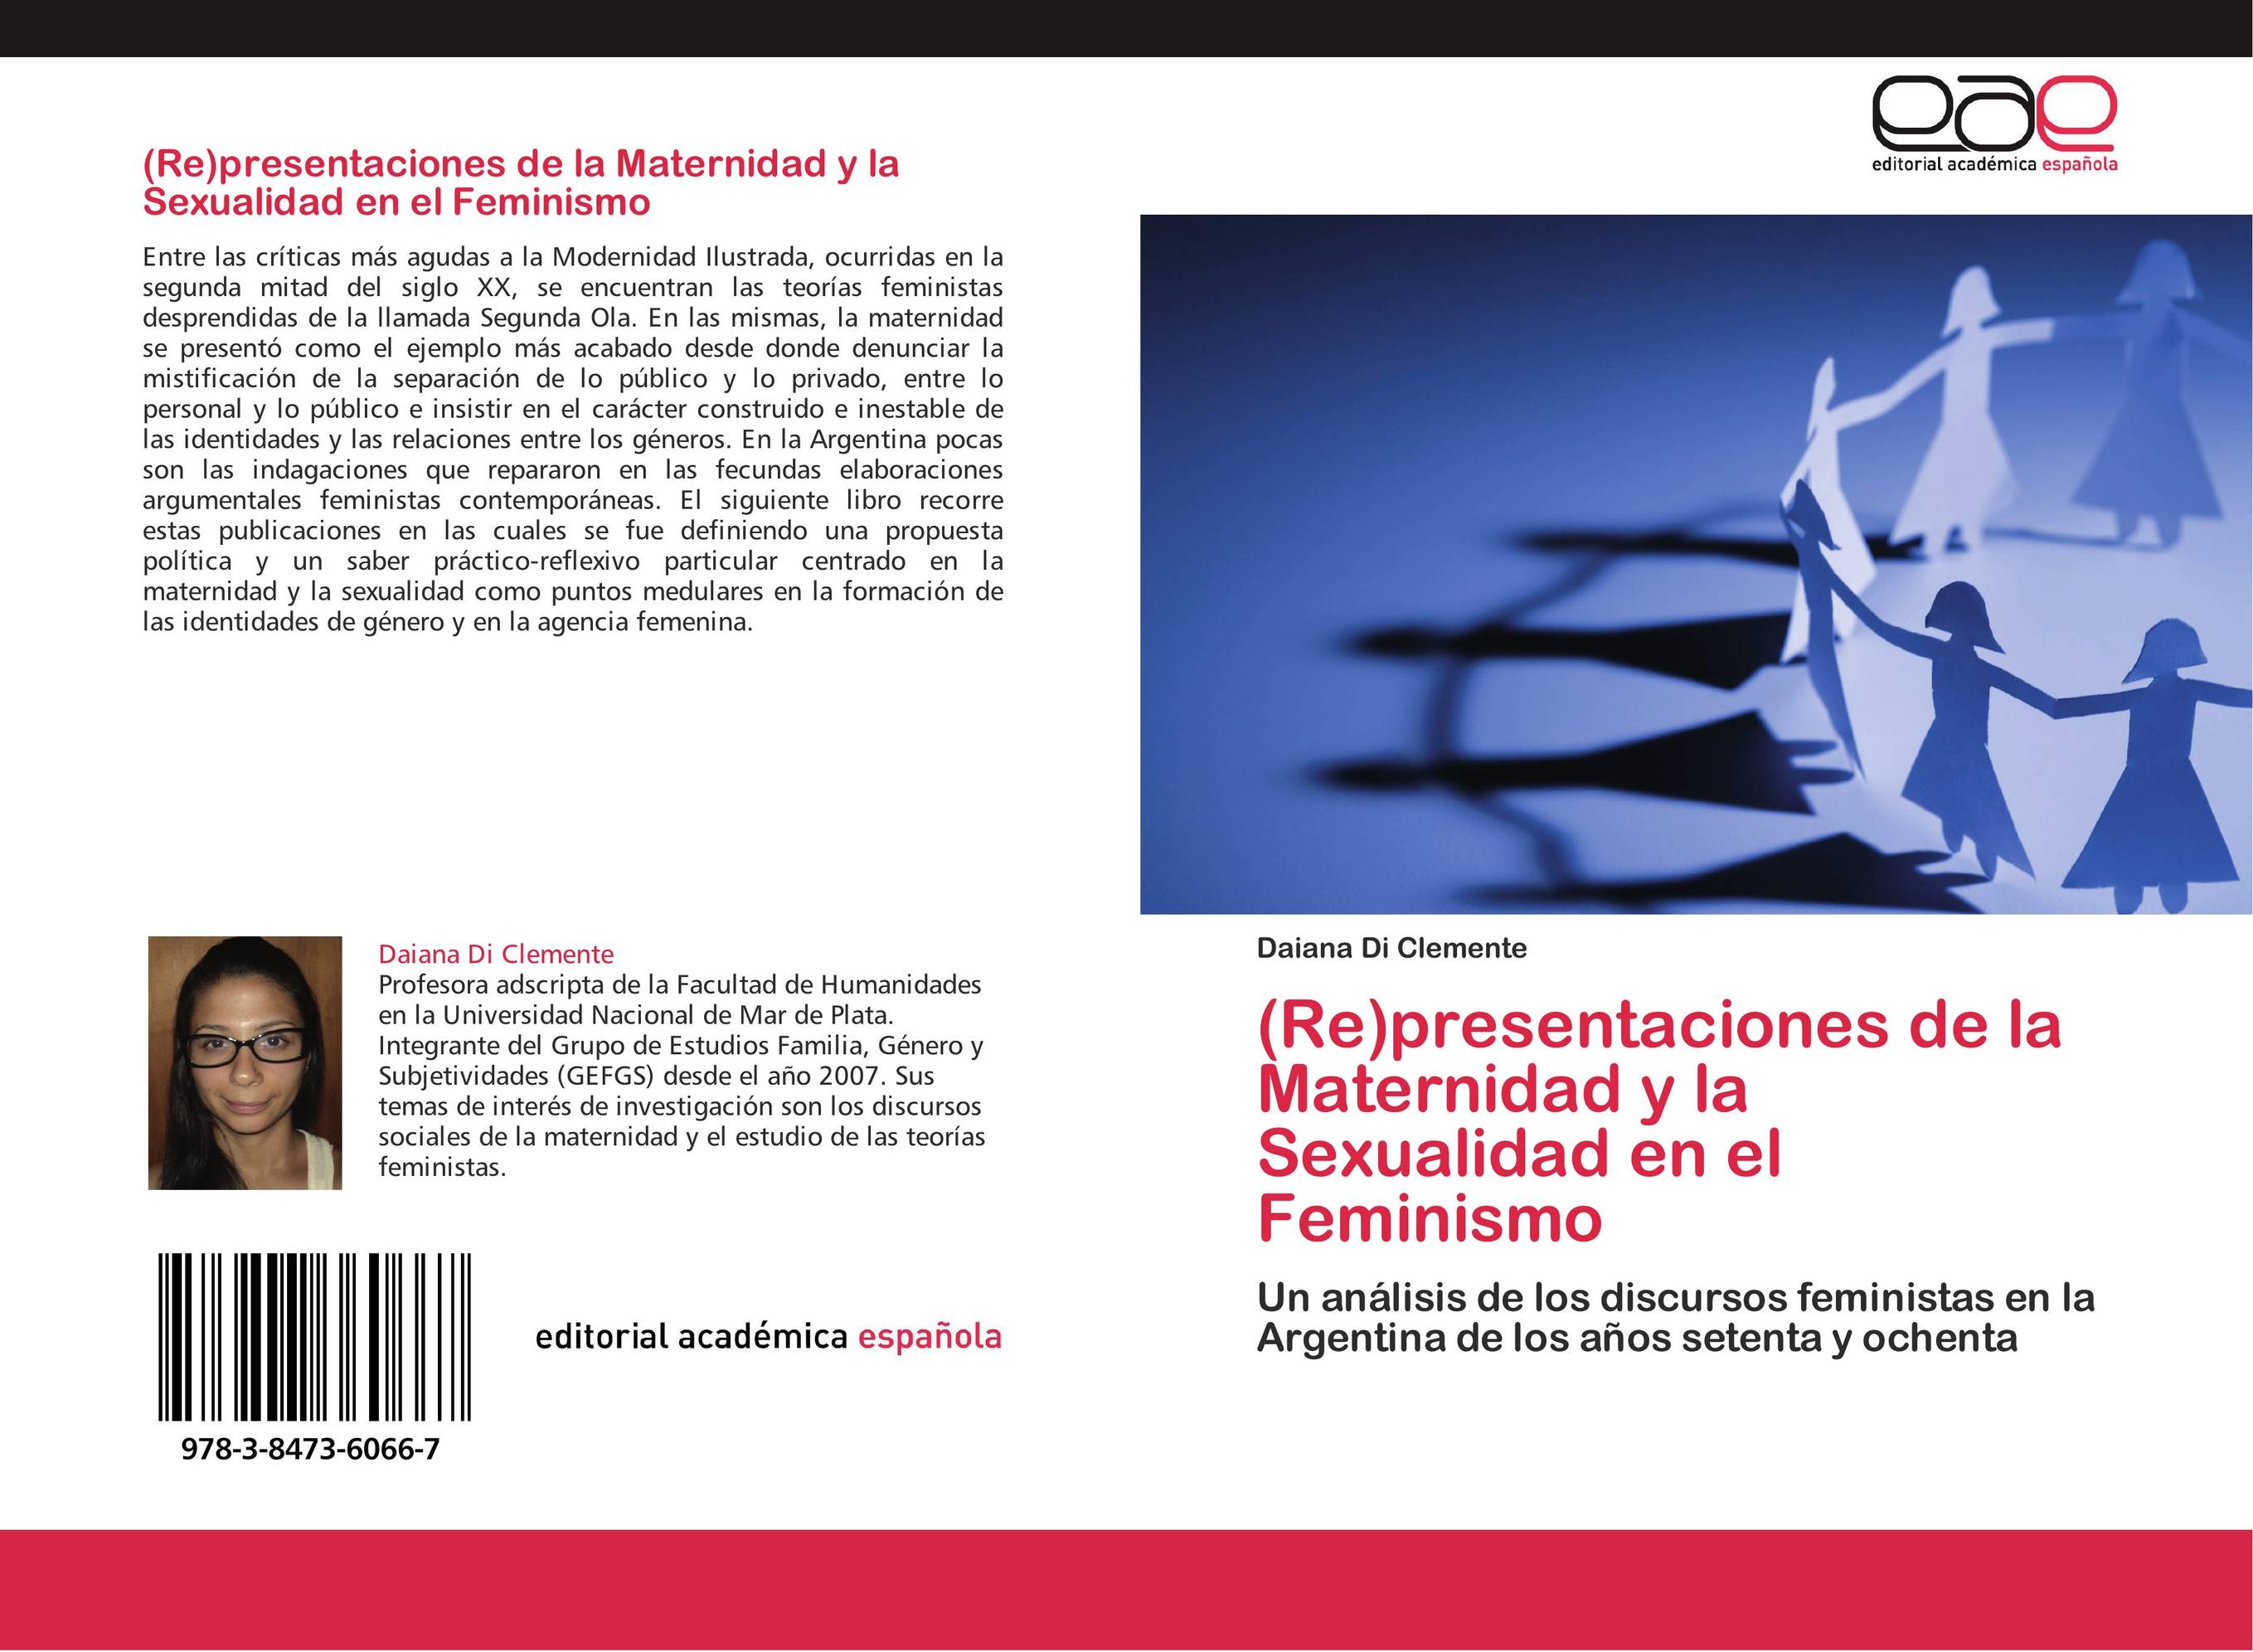 (Re)presentaciones de la Maternidad y la Sexualidad en el Feminismo